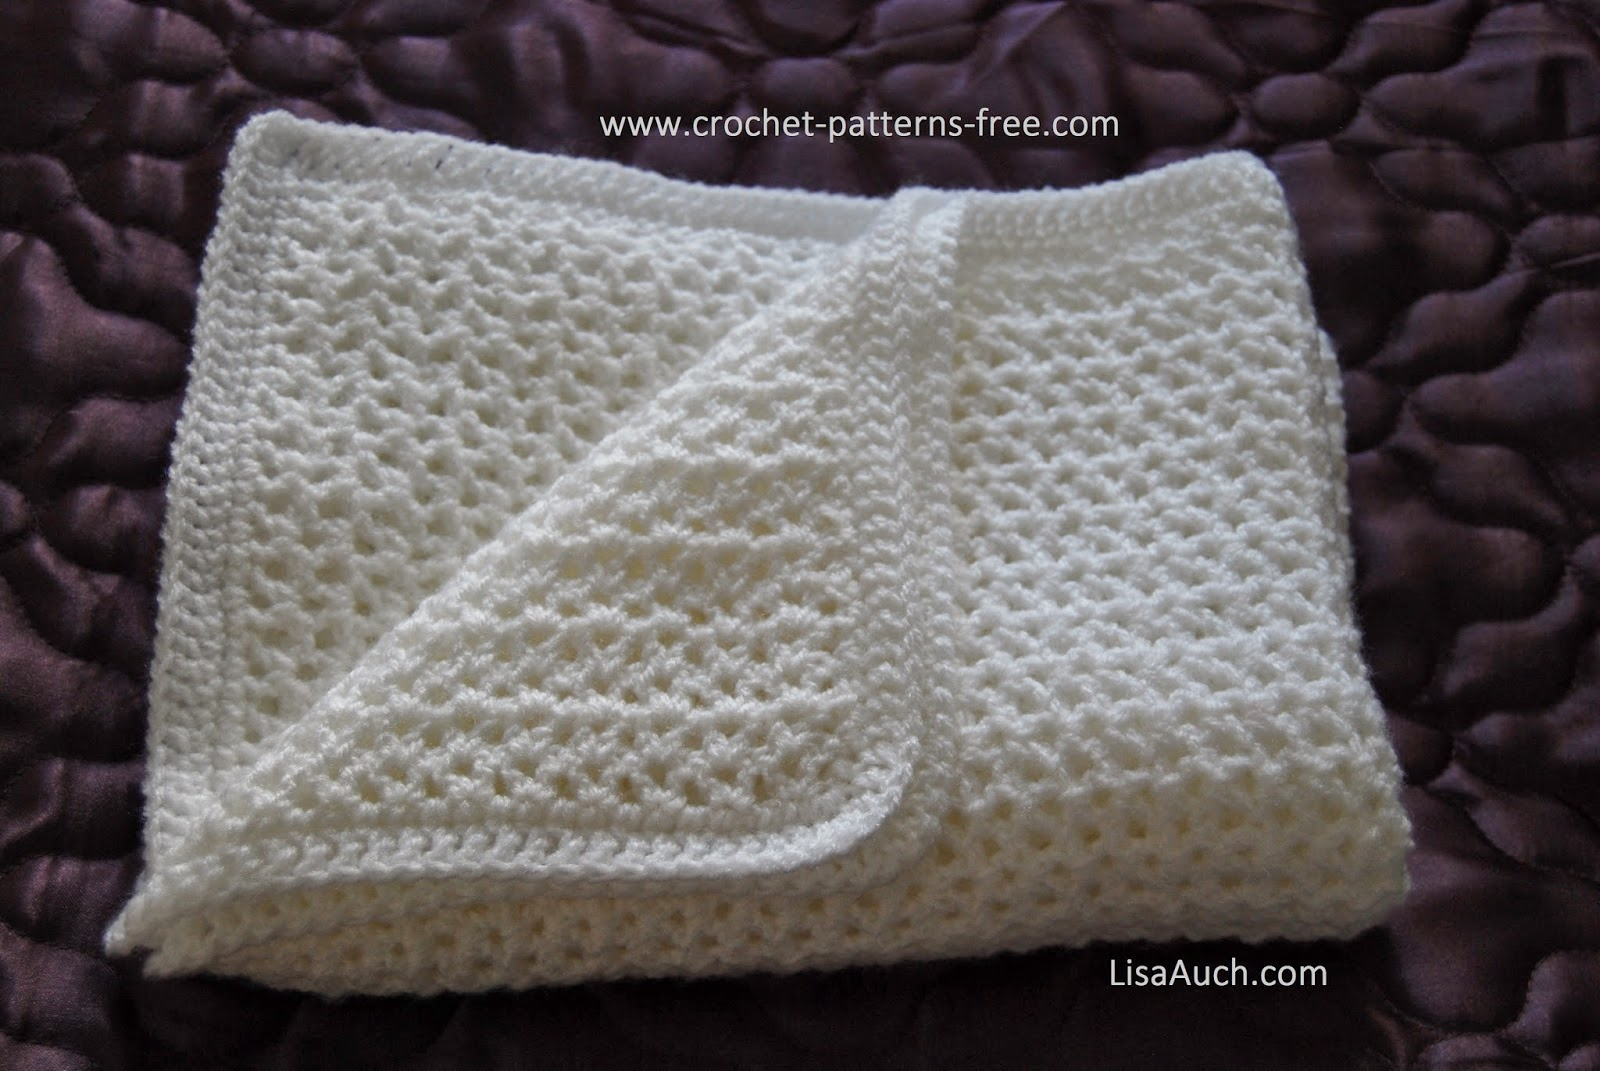 Crochet Baby Shawls Free Patterns Free Crochet Ba Blanket Pattern Easy Crochet V Stitch Crocheted